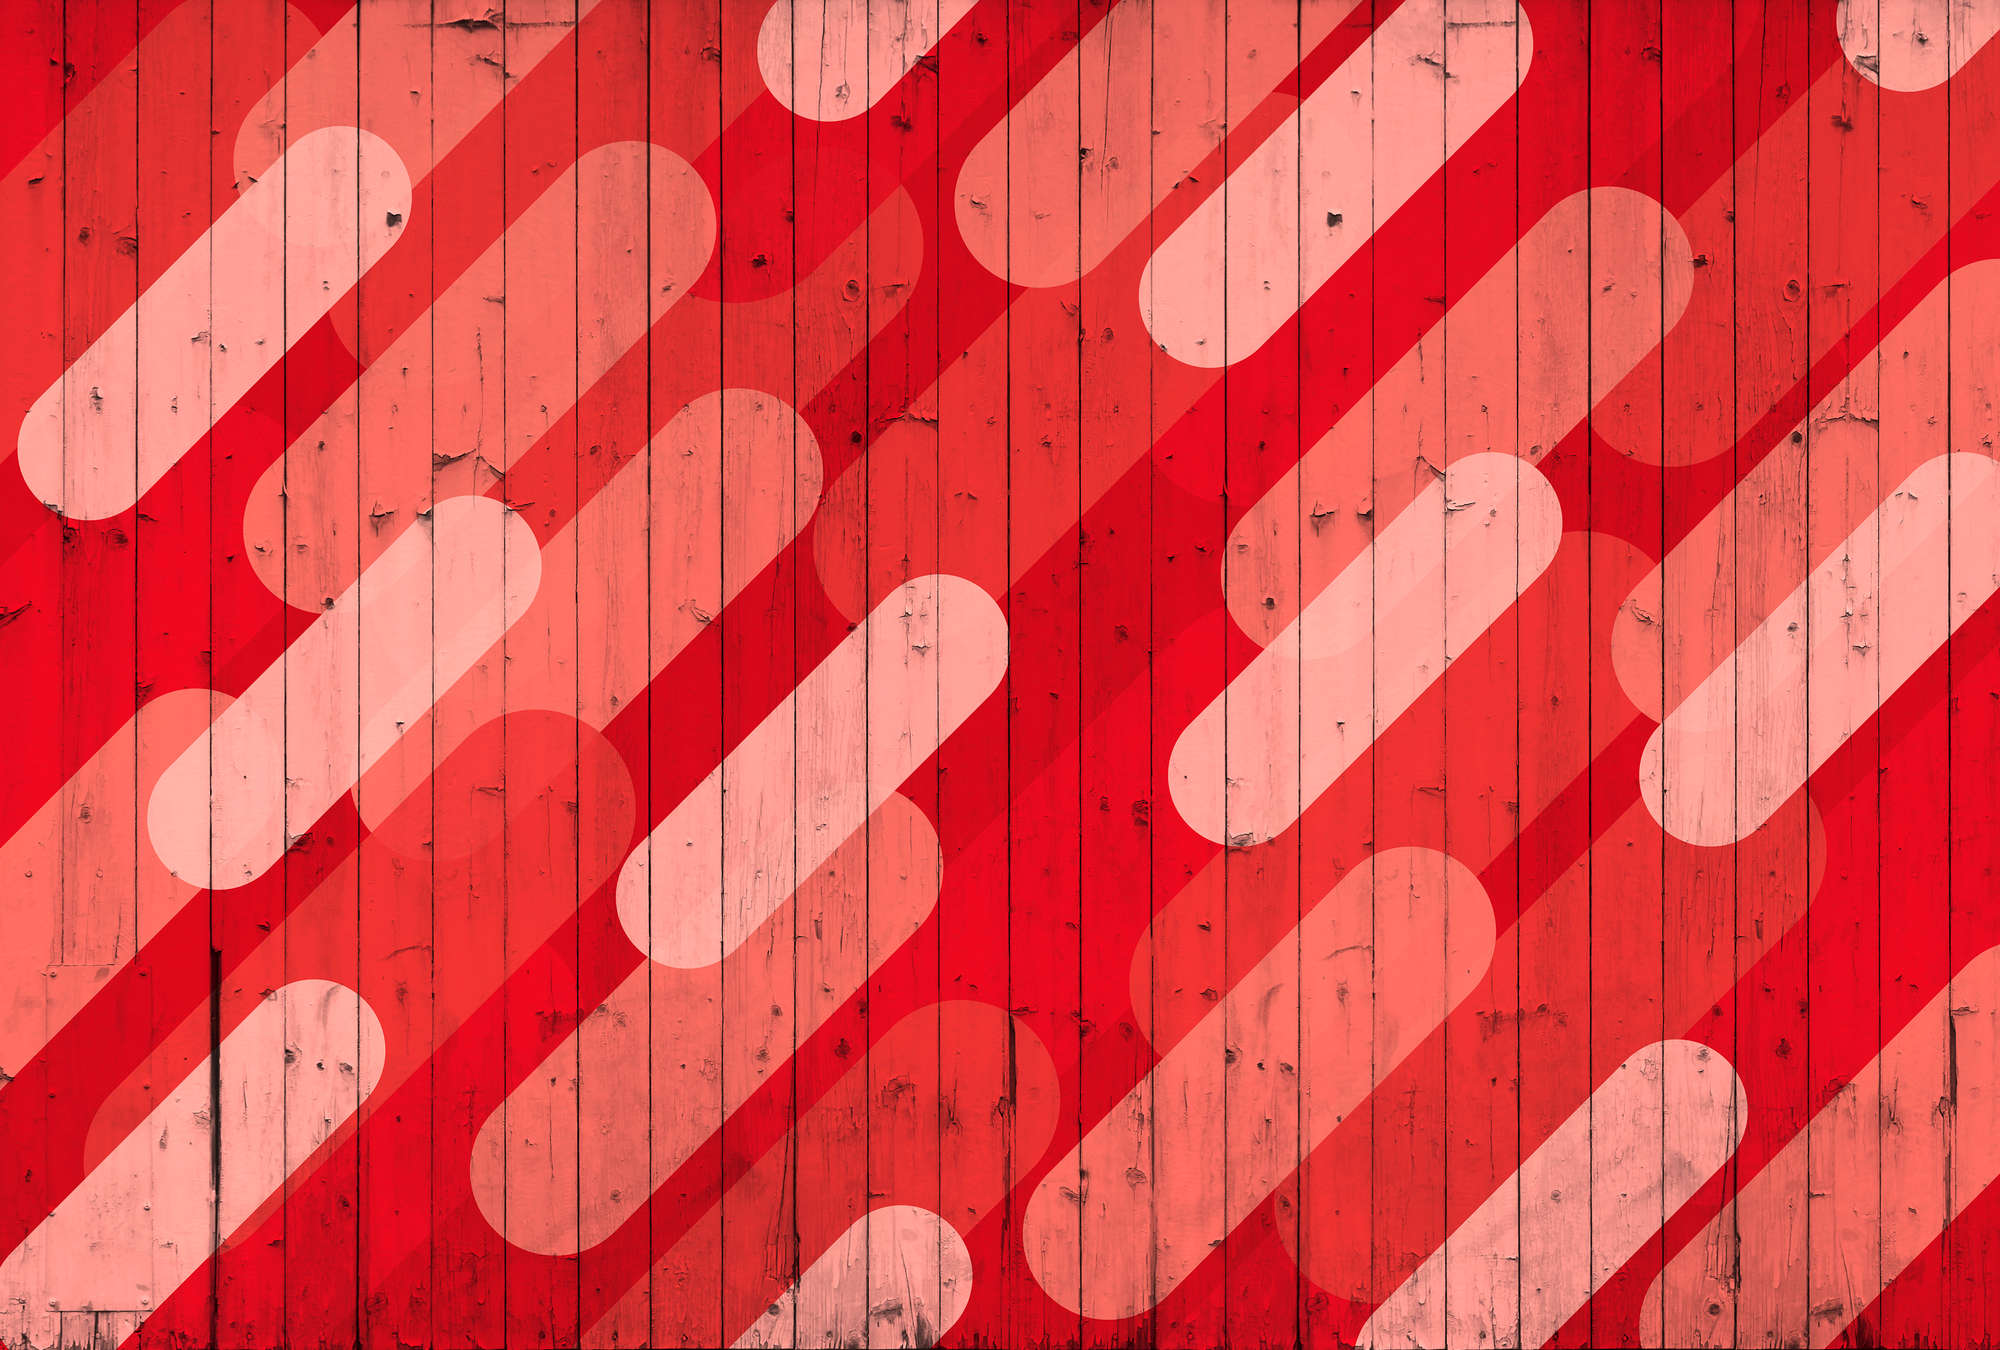             Board pattern & stripe design mural - red, pink, cream
        